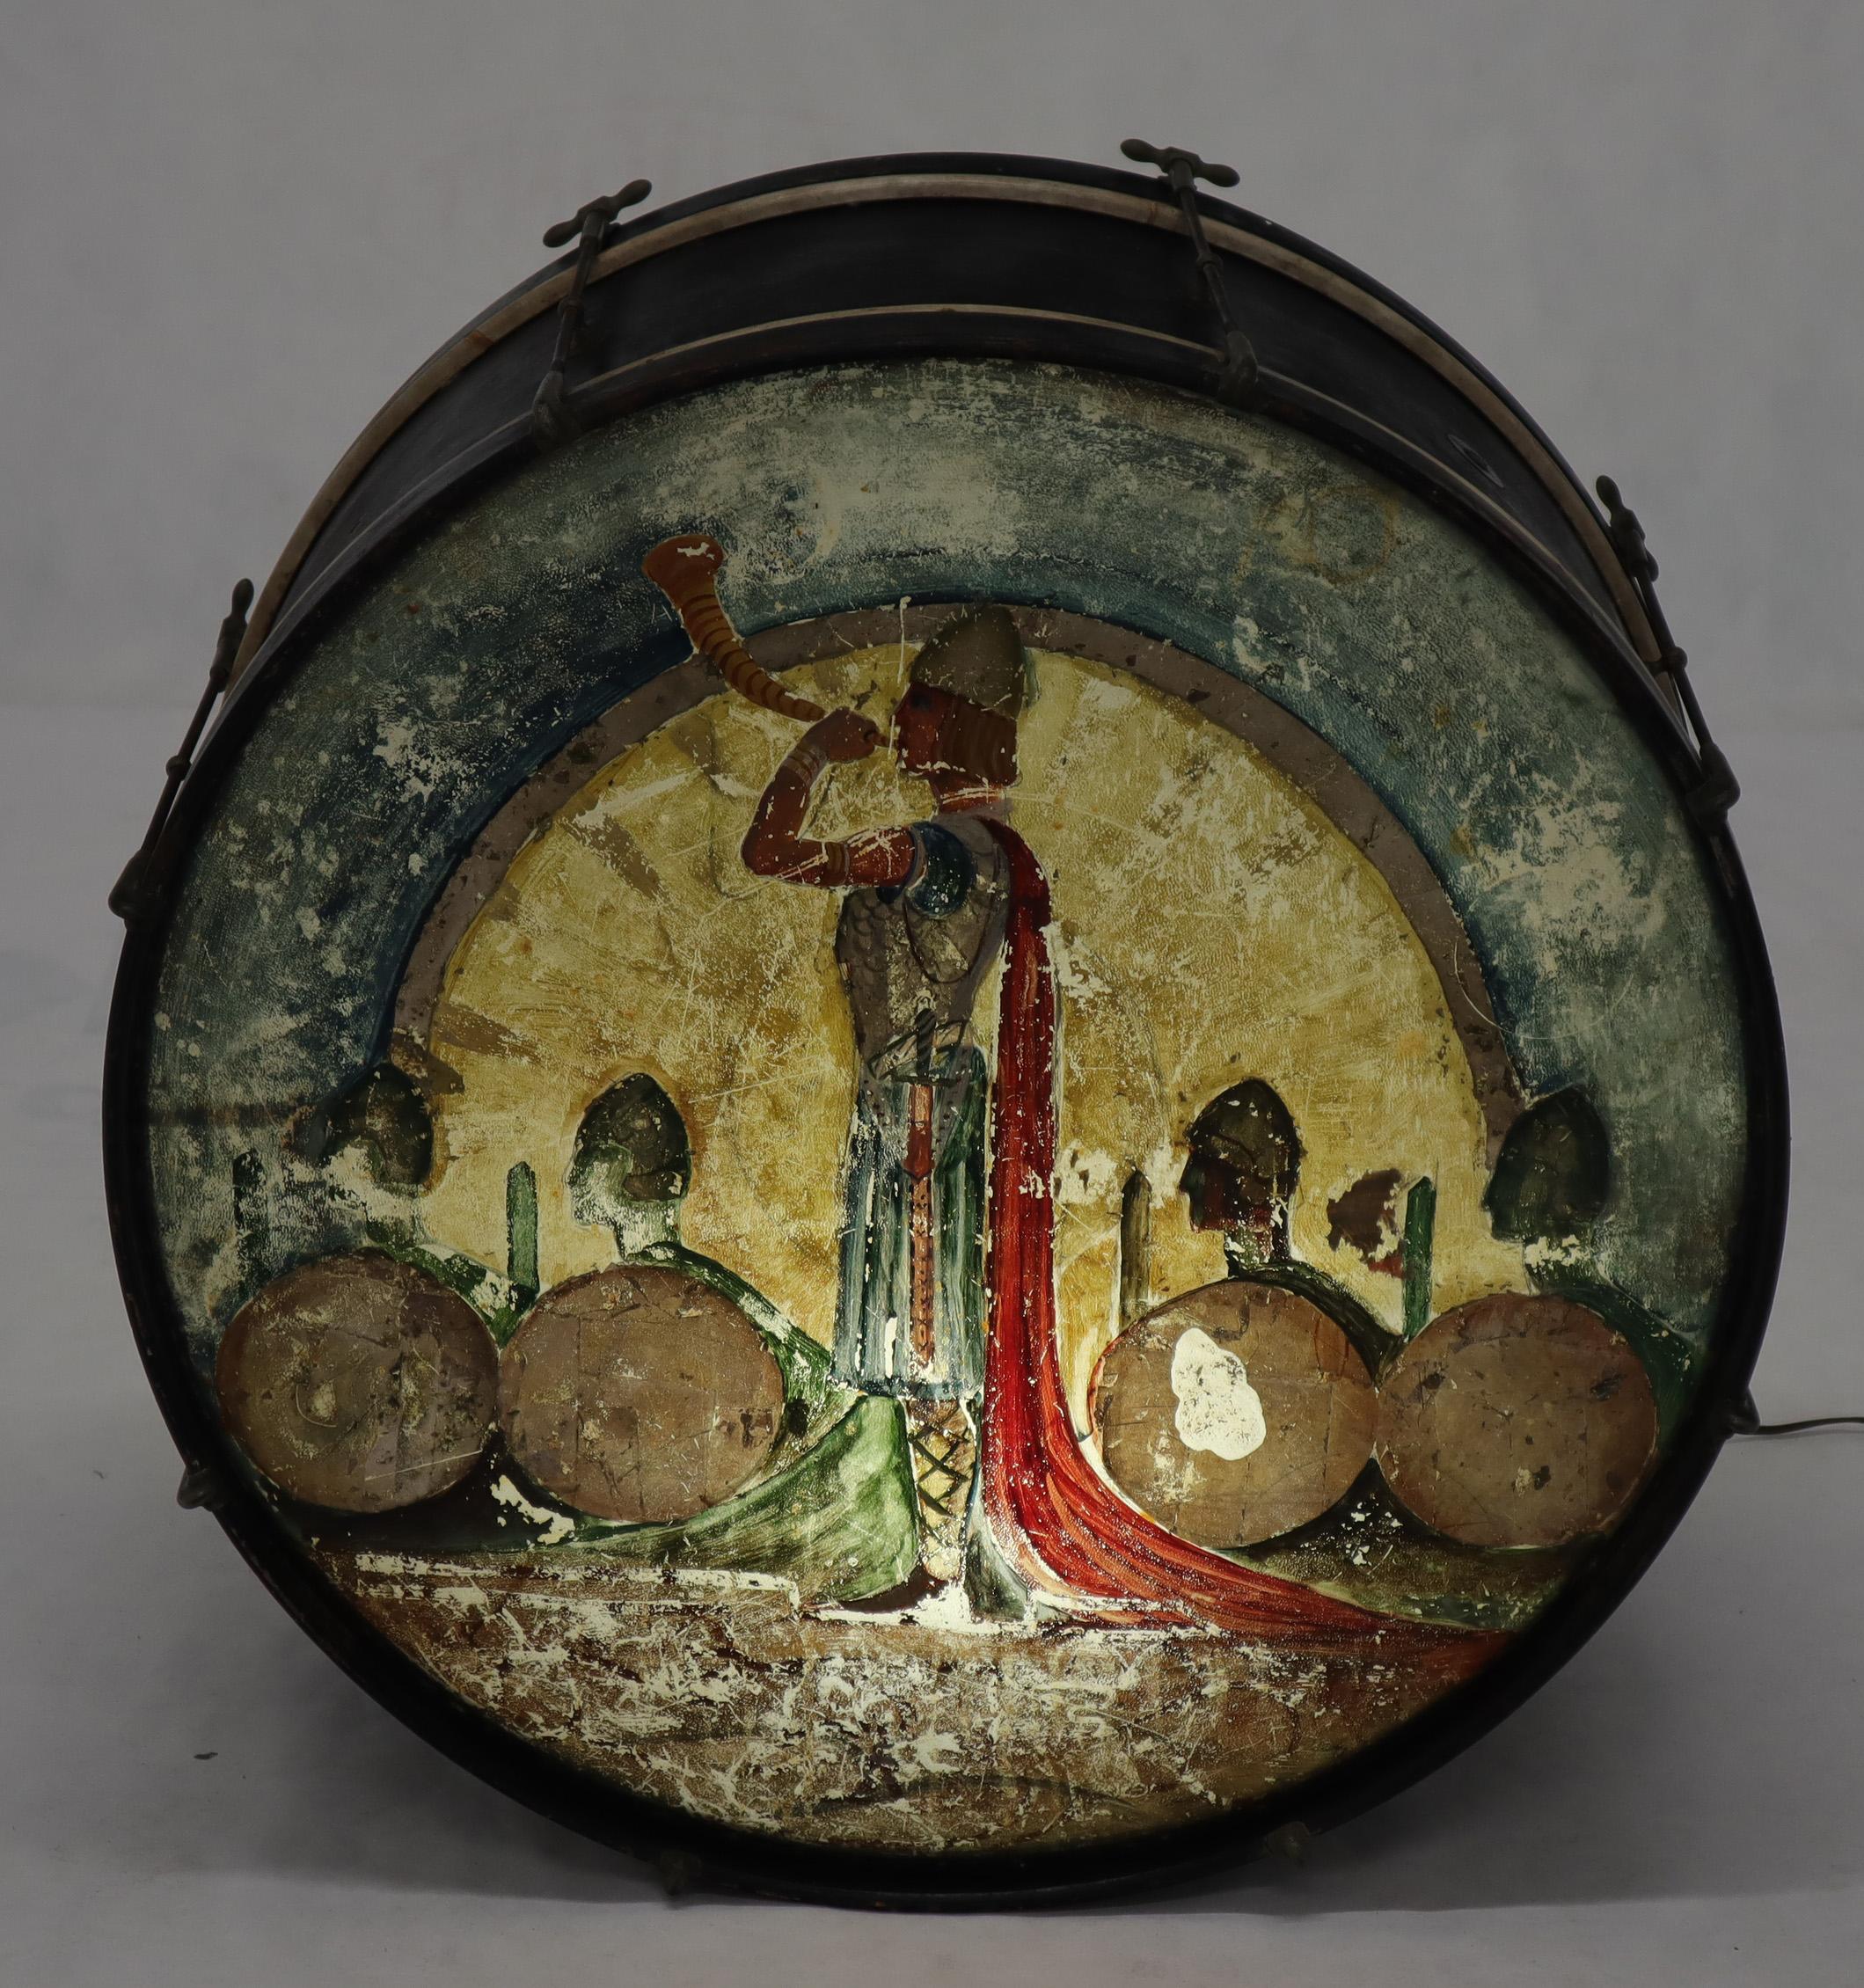 Objet insolite : grand tambour vintage peint et transformé en lampadaire.